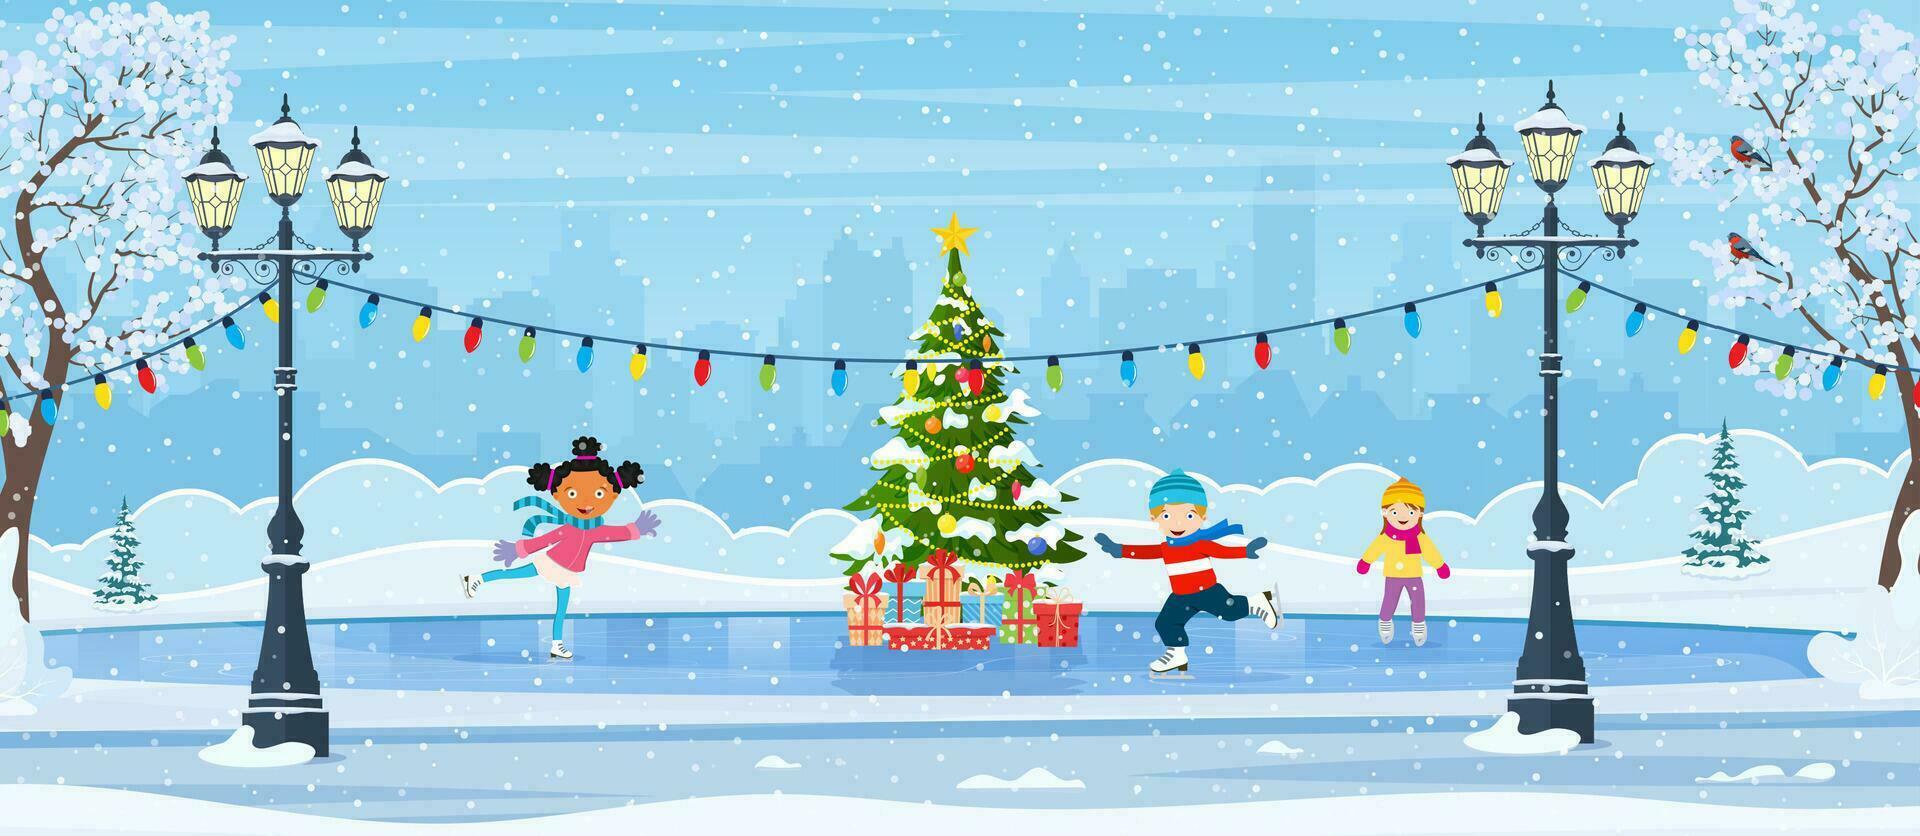 Navidad hielo pista con abeto árbol decorado con iluminación. invierno escena con Patinaje niños. dibujos animados congelado paisaje. invierno día parque escena. vector ilustración en plano estilo